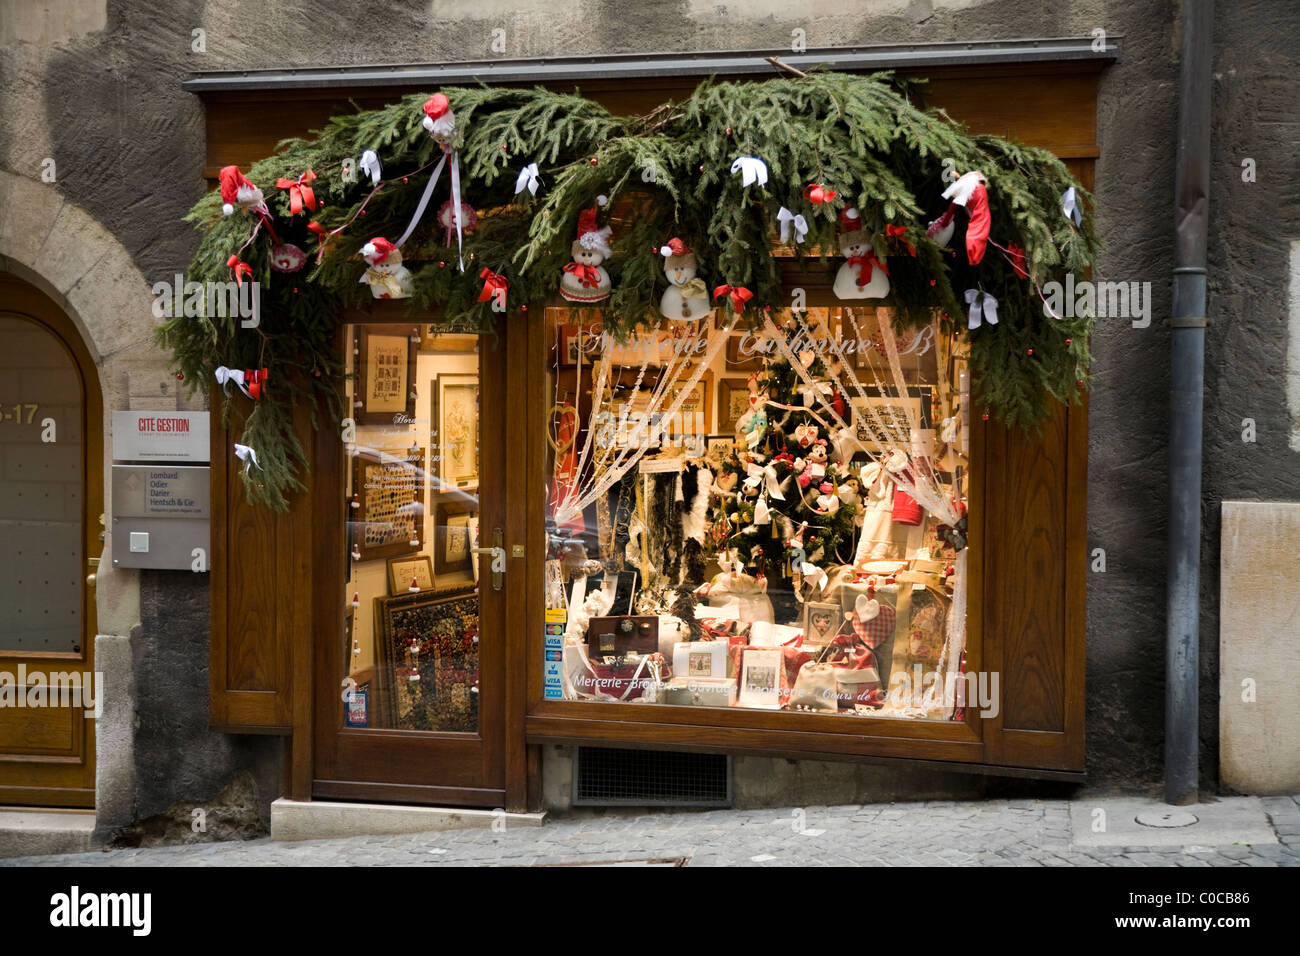 La cucitura shop / / Ricamo Ricamo / Arte / Galleria Arazzi con decorazioni di Natale a Ginevra / Geneve, Svizzera. Foto Stock